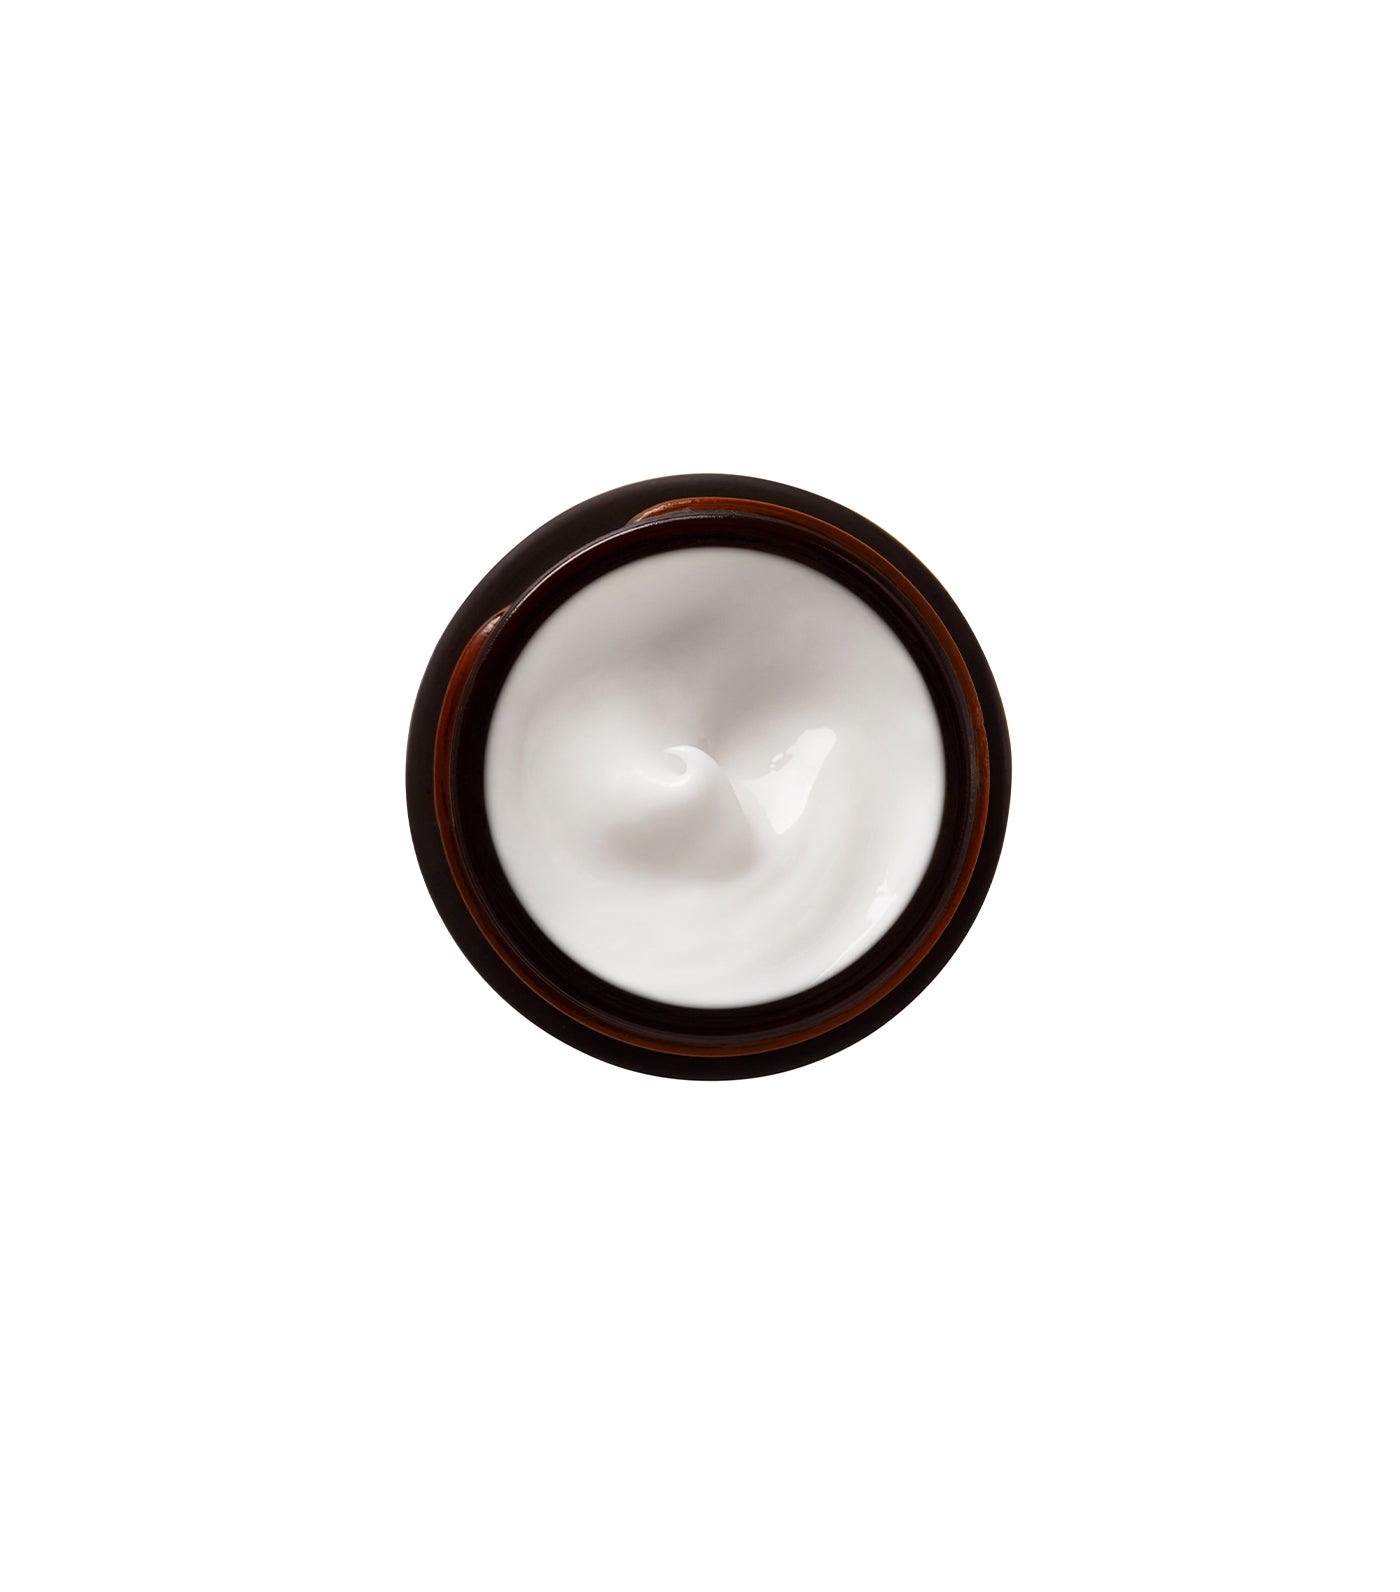 Perricone MD Essential Fx Acyl-Glutathione Smoothing & Brightening Under-Eye Cream